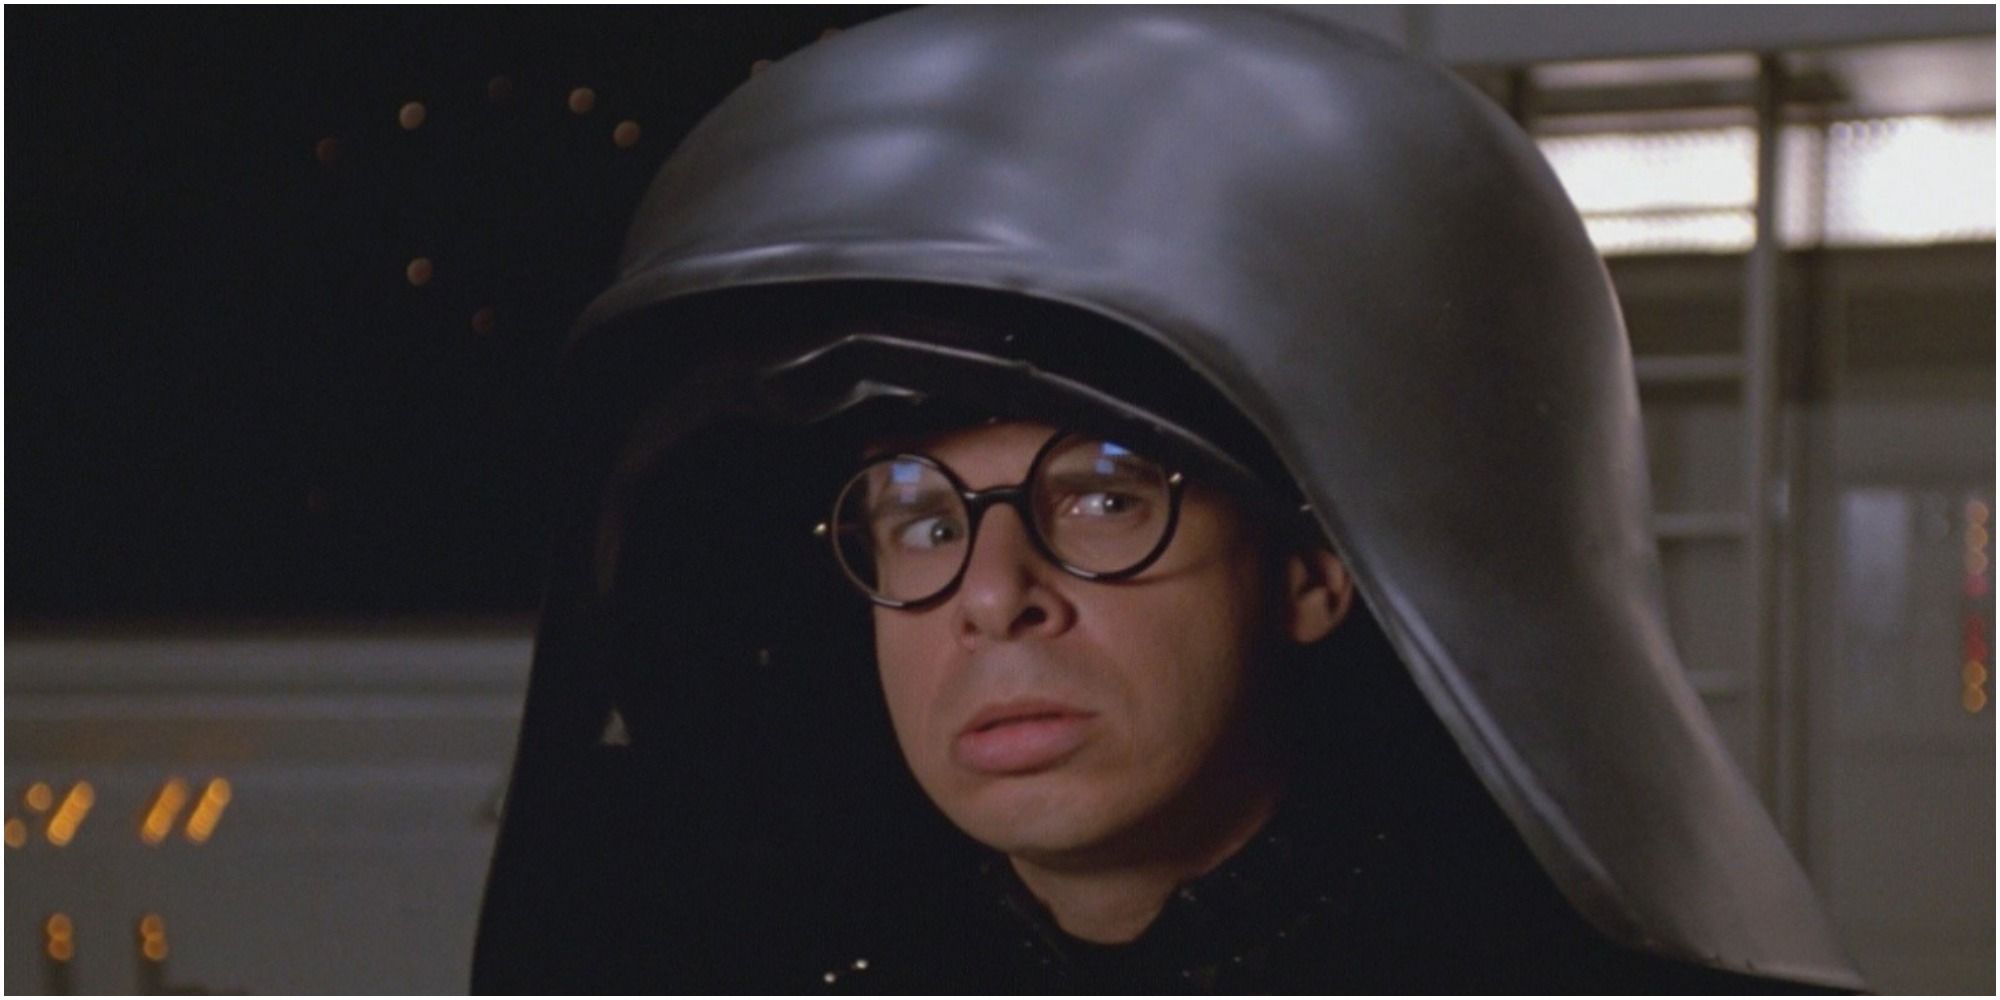 Dark Helmet looking at something off-screen in Spaceballs